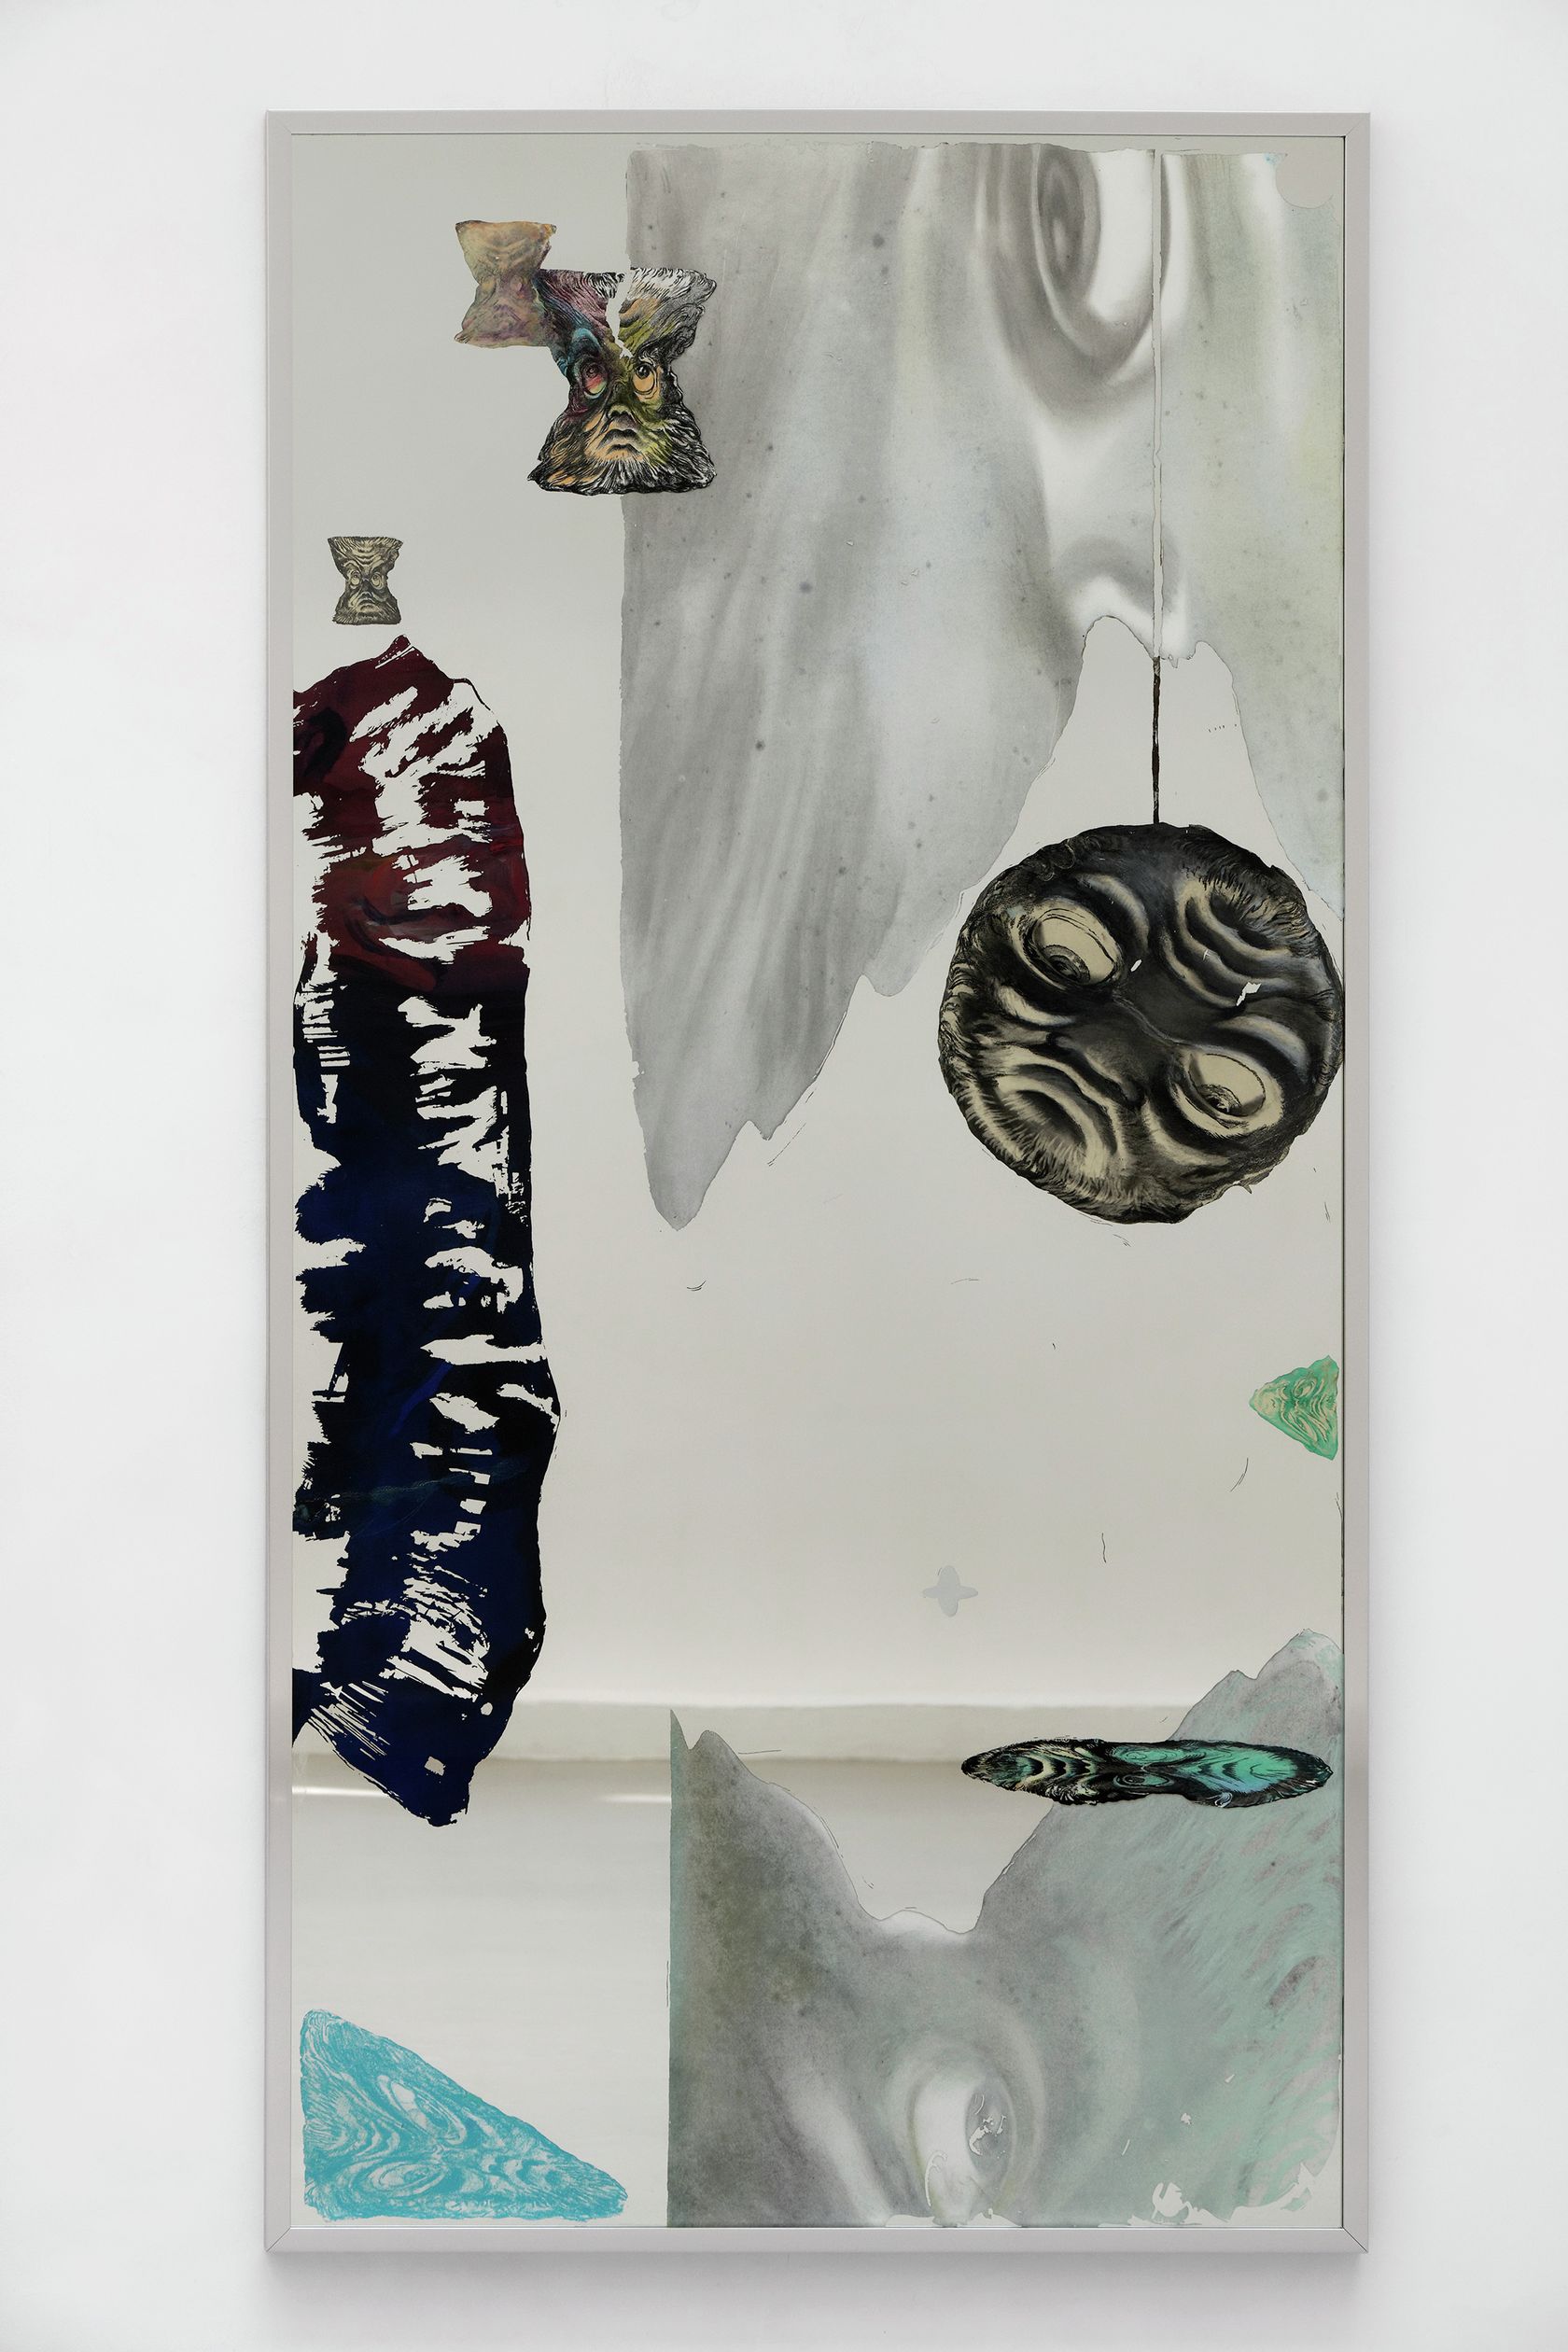 Julien Tiberi, Les barbus de l'espace, 2021 Miroir215 × 109 cm / 84 5/8 × 42 7/8 in. | 219 × 112.5 × 4.5 cm / 86 2/8 × 44 2/8 × 1 6/8 in. (encadré/framed)